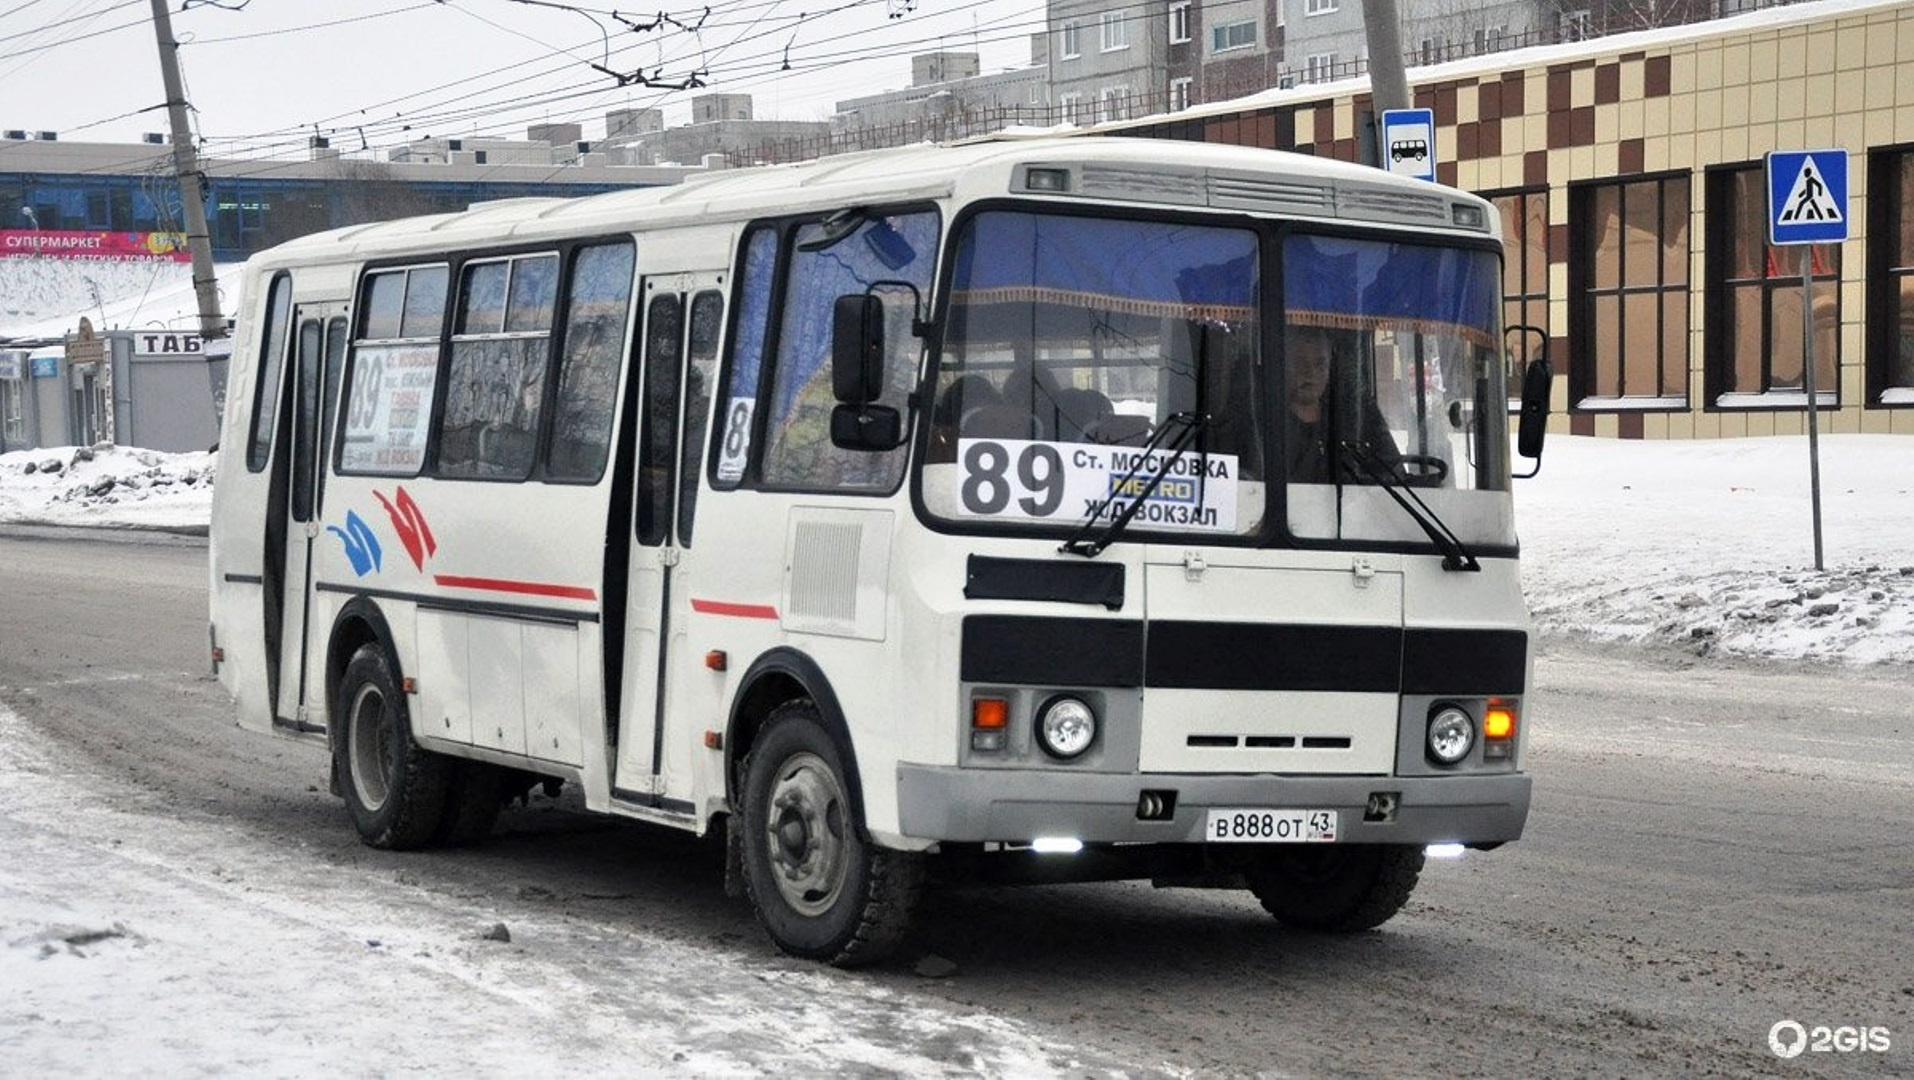 Иногда Андрею Бондаренко приходилось делить 89-й маршрут с другими перевозчиками